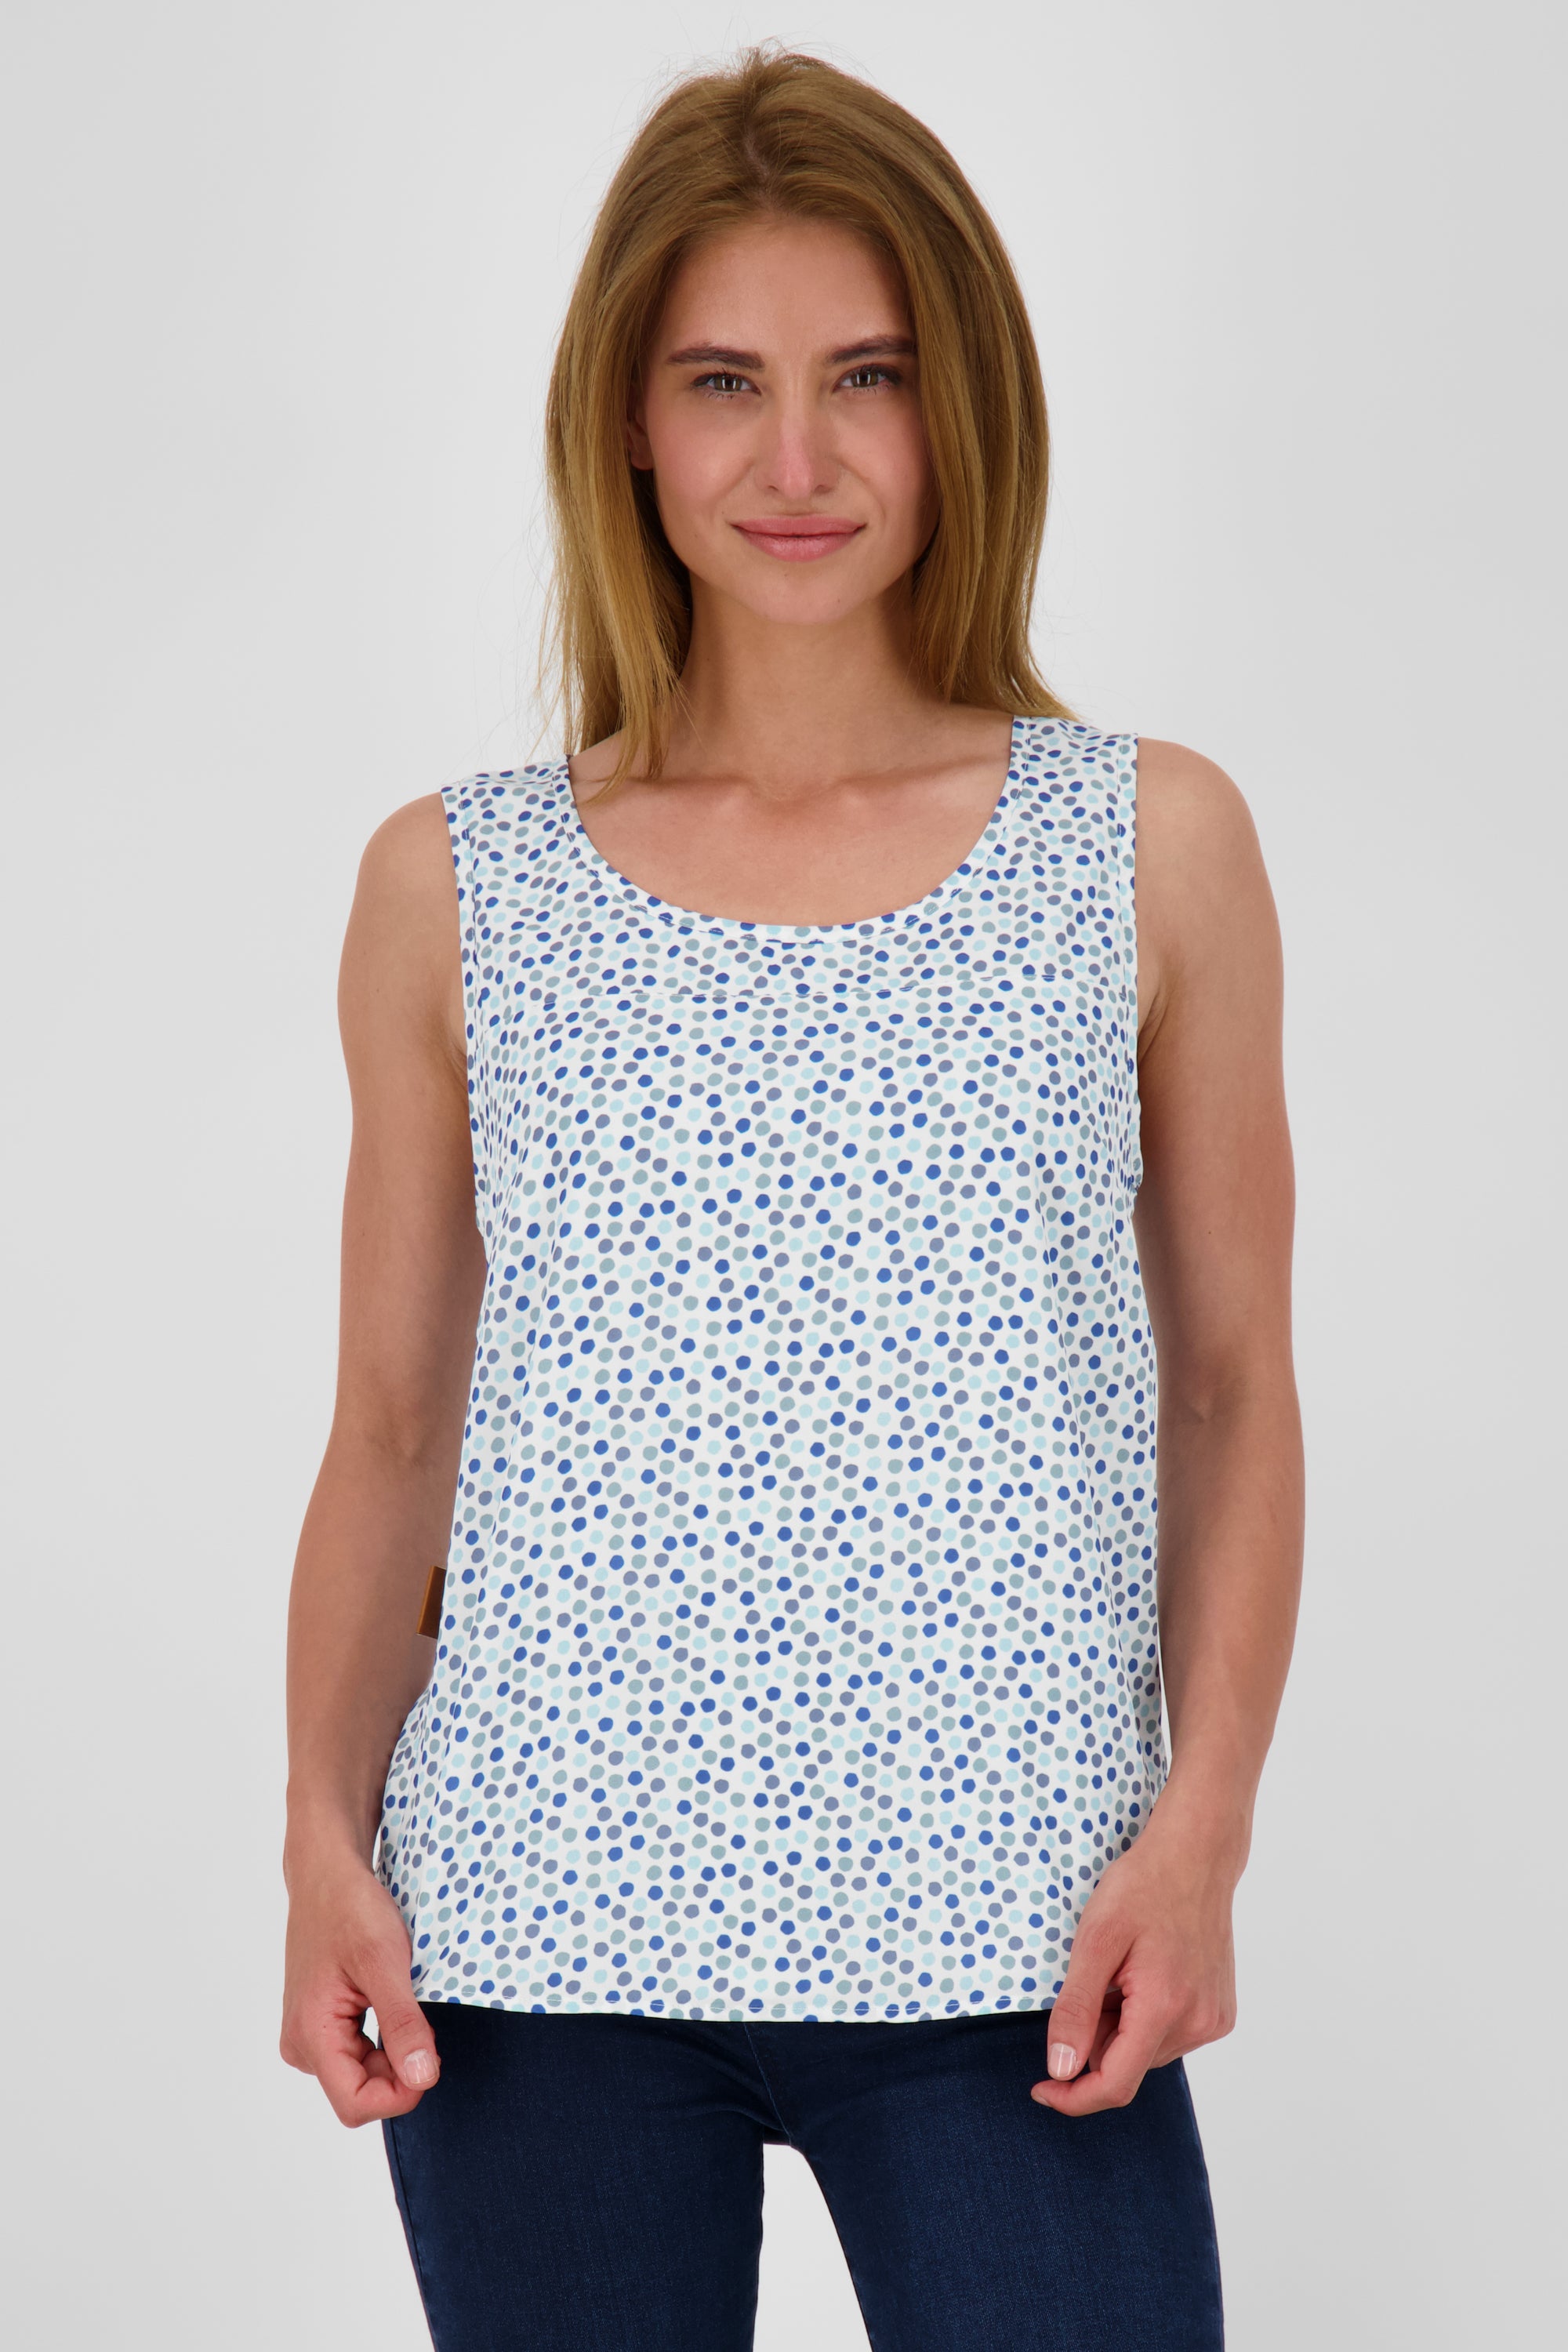 GiuliaAK B Bluse mit Muster - Leichter Sommer-Look für Damen Weiß